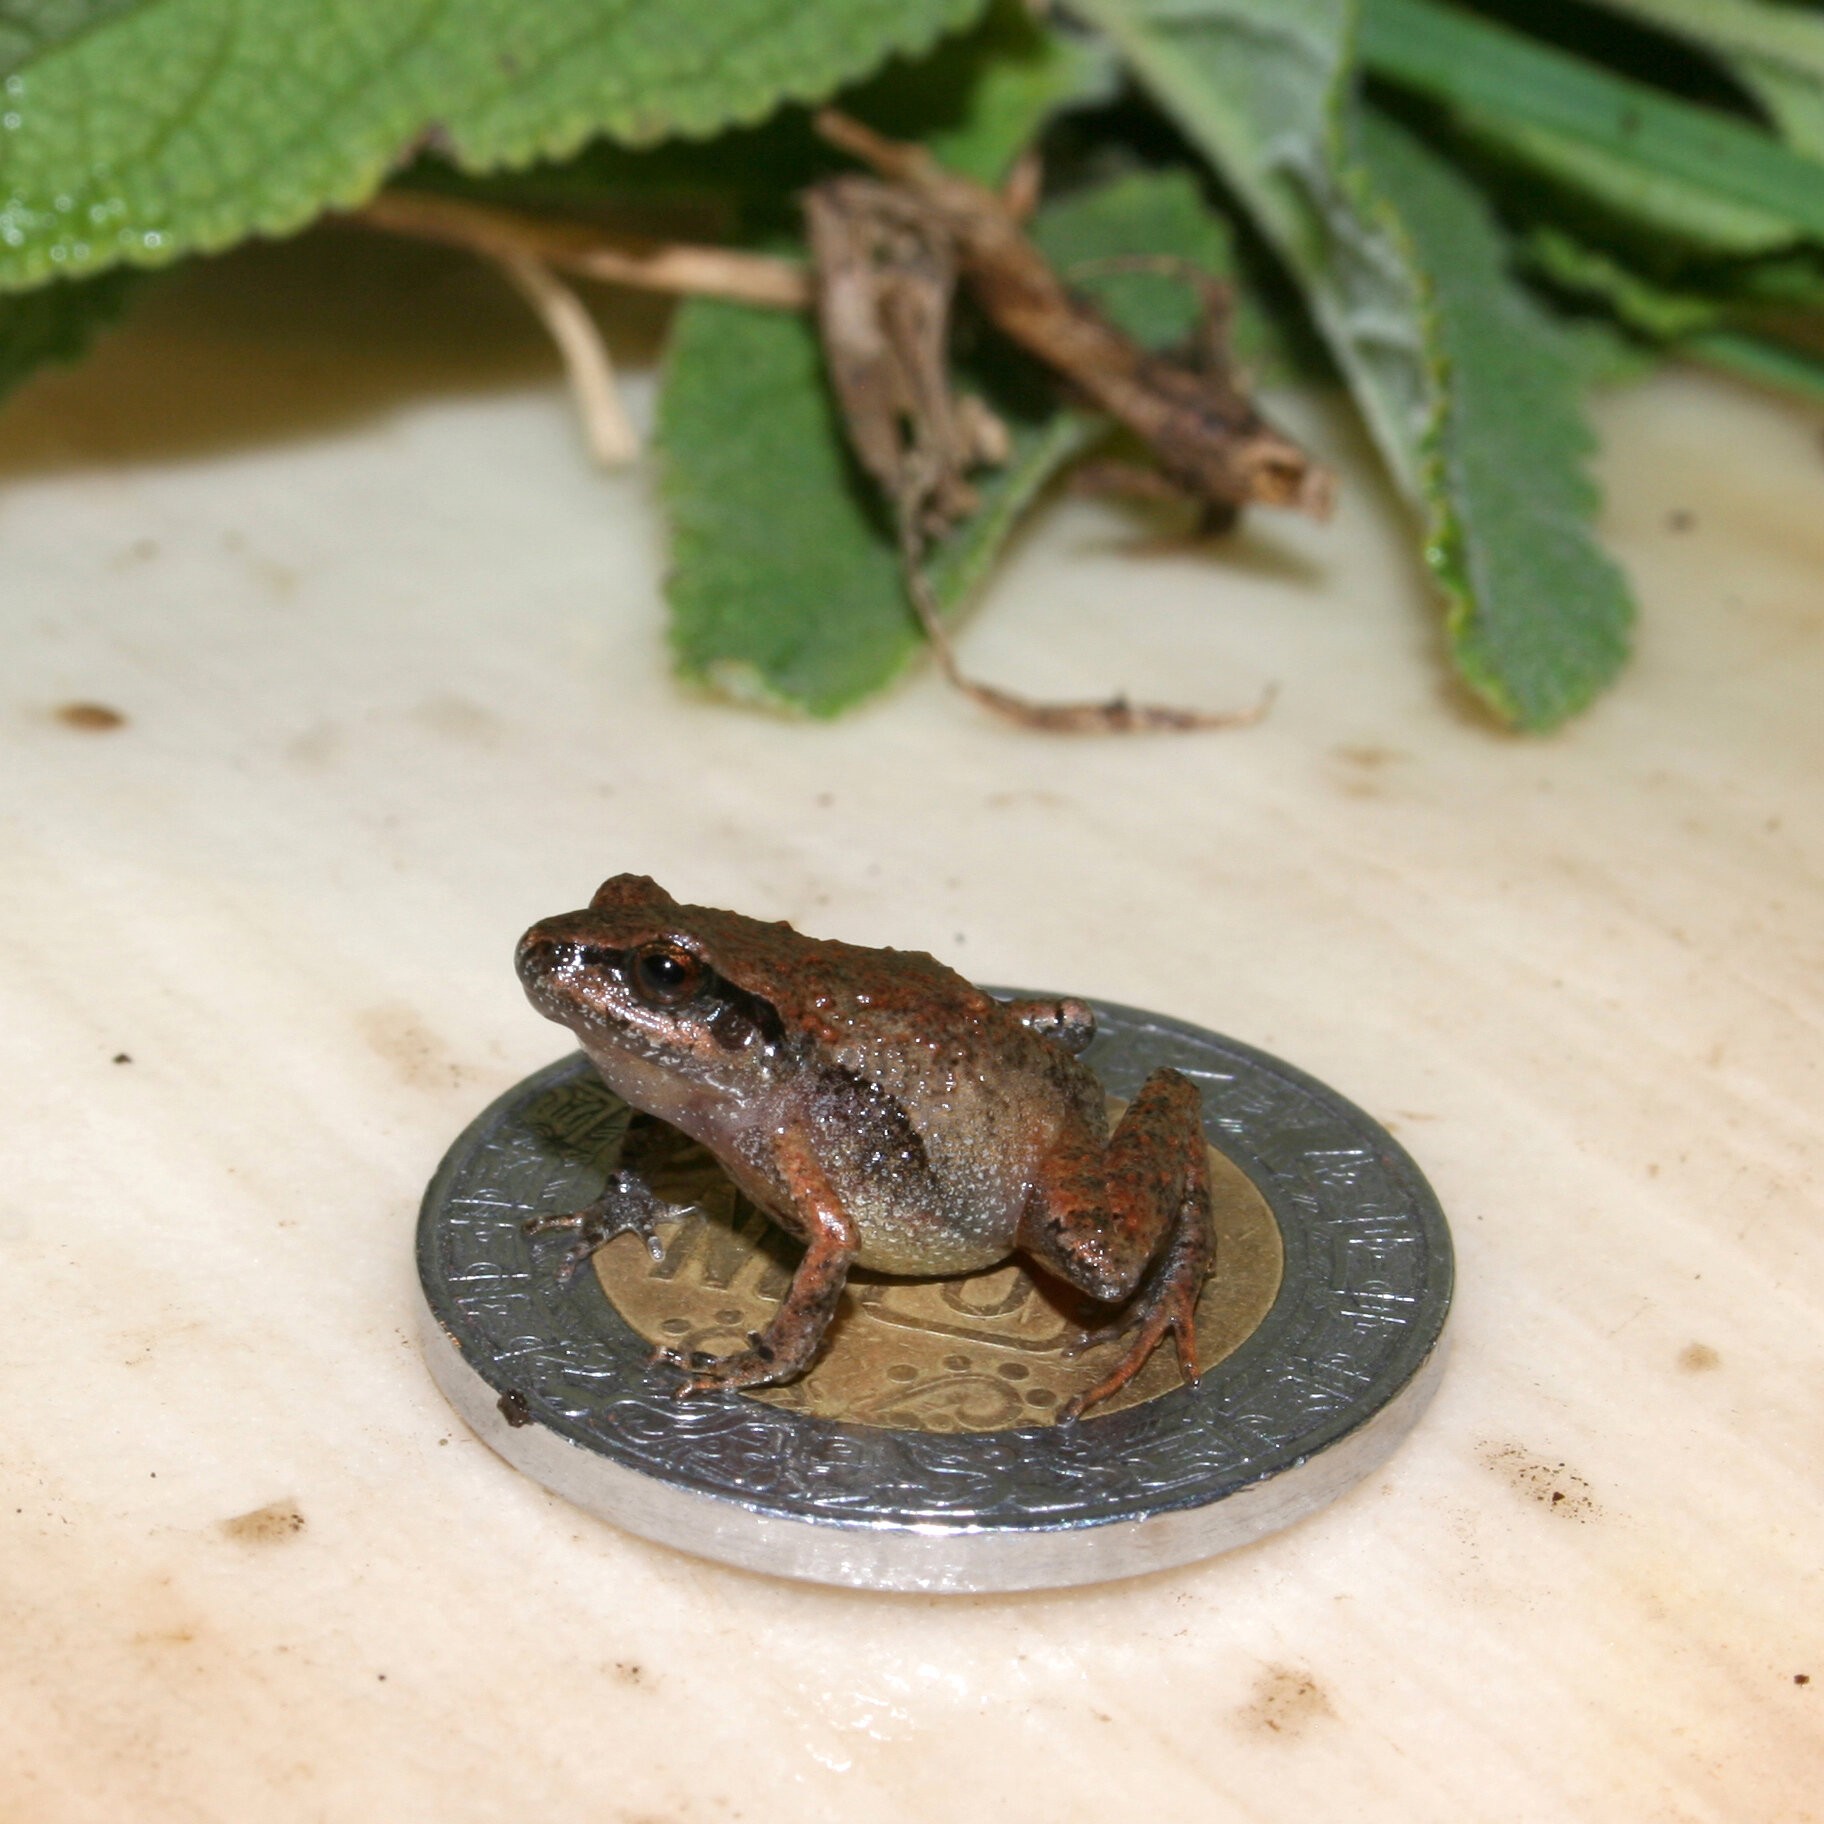 Craugastor cueyatl, uma das espécies de sapos recém-descobertos, senta-se em uma moeda mexicana de 10 pesos com 28 mm de diâmetro (Foto: Jeffrey W Streicher/ Museu de História Natural, Londres)